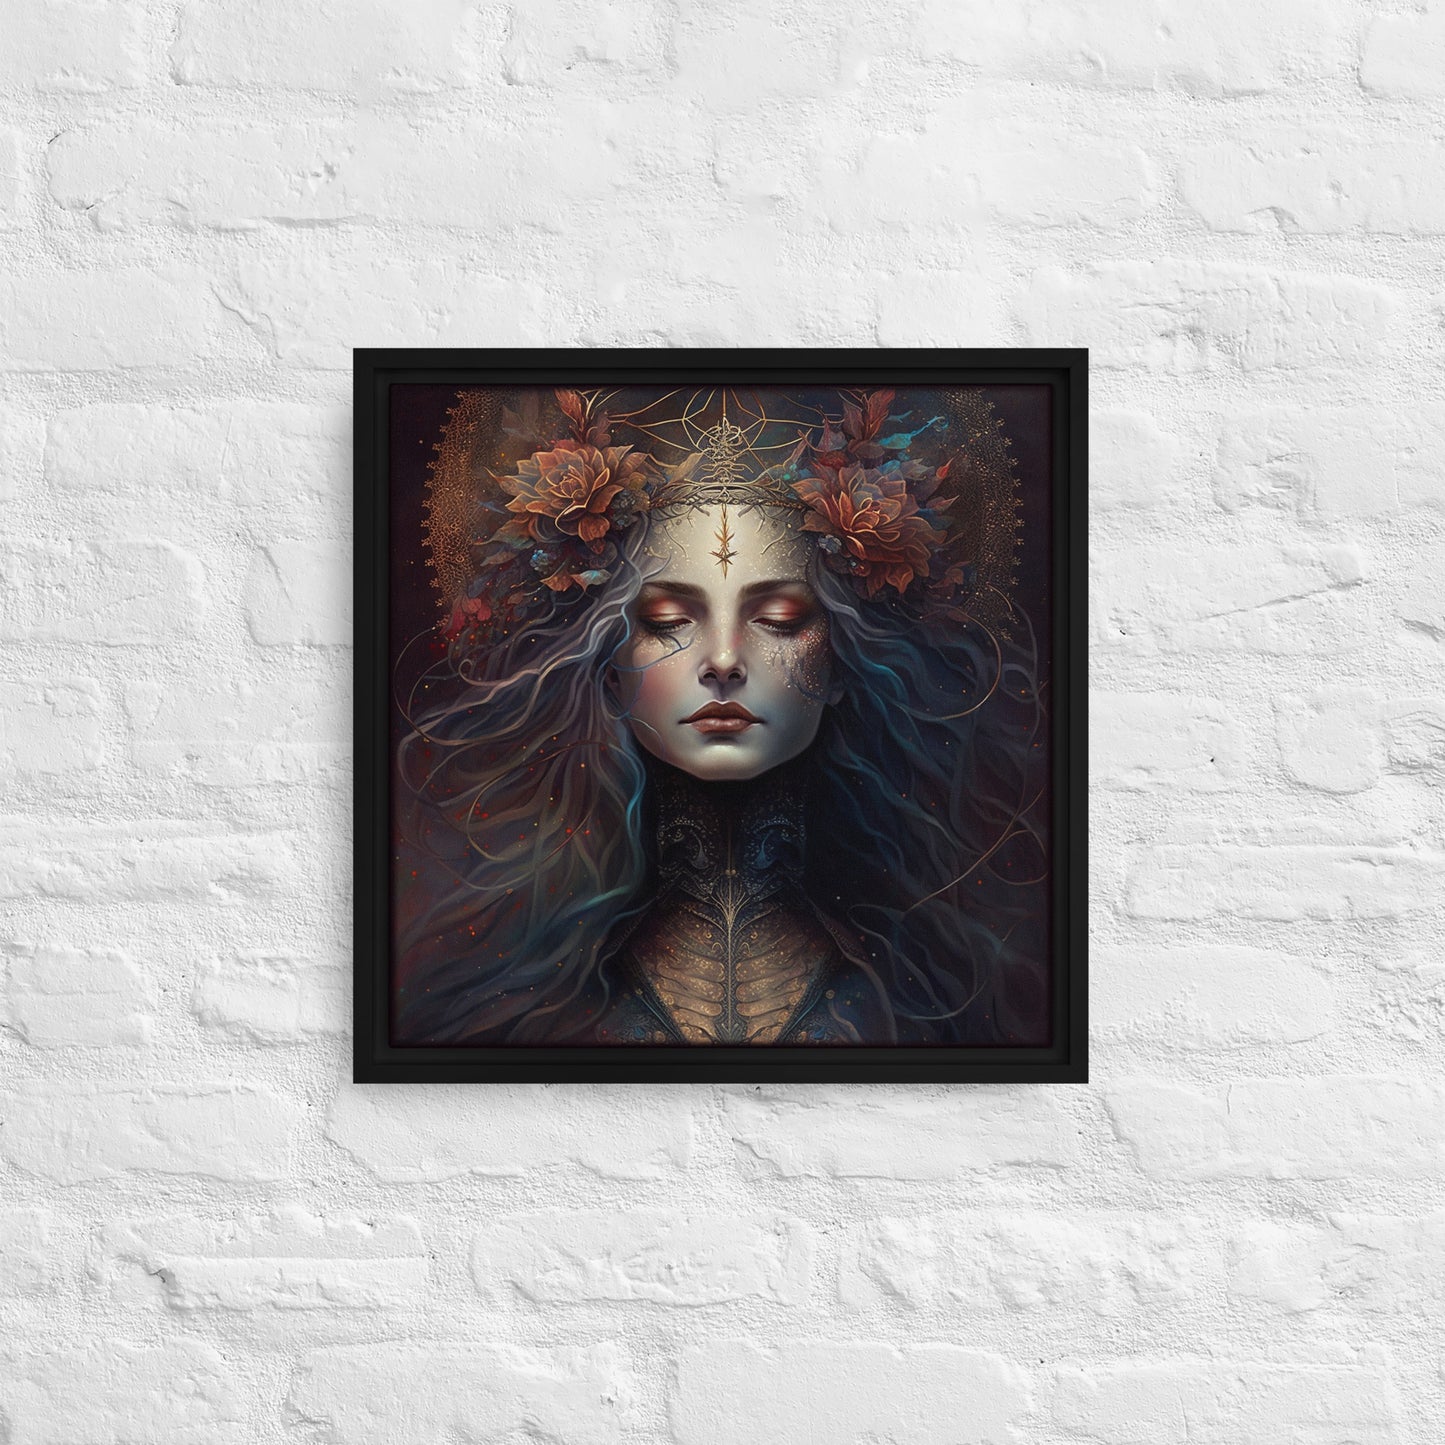 Warrior Goddess "Isolde" Framed canvas